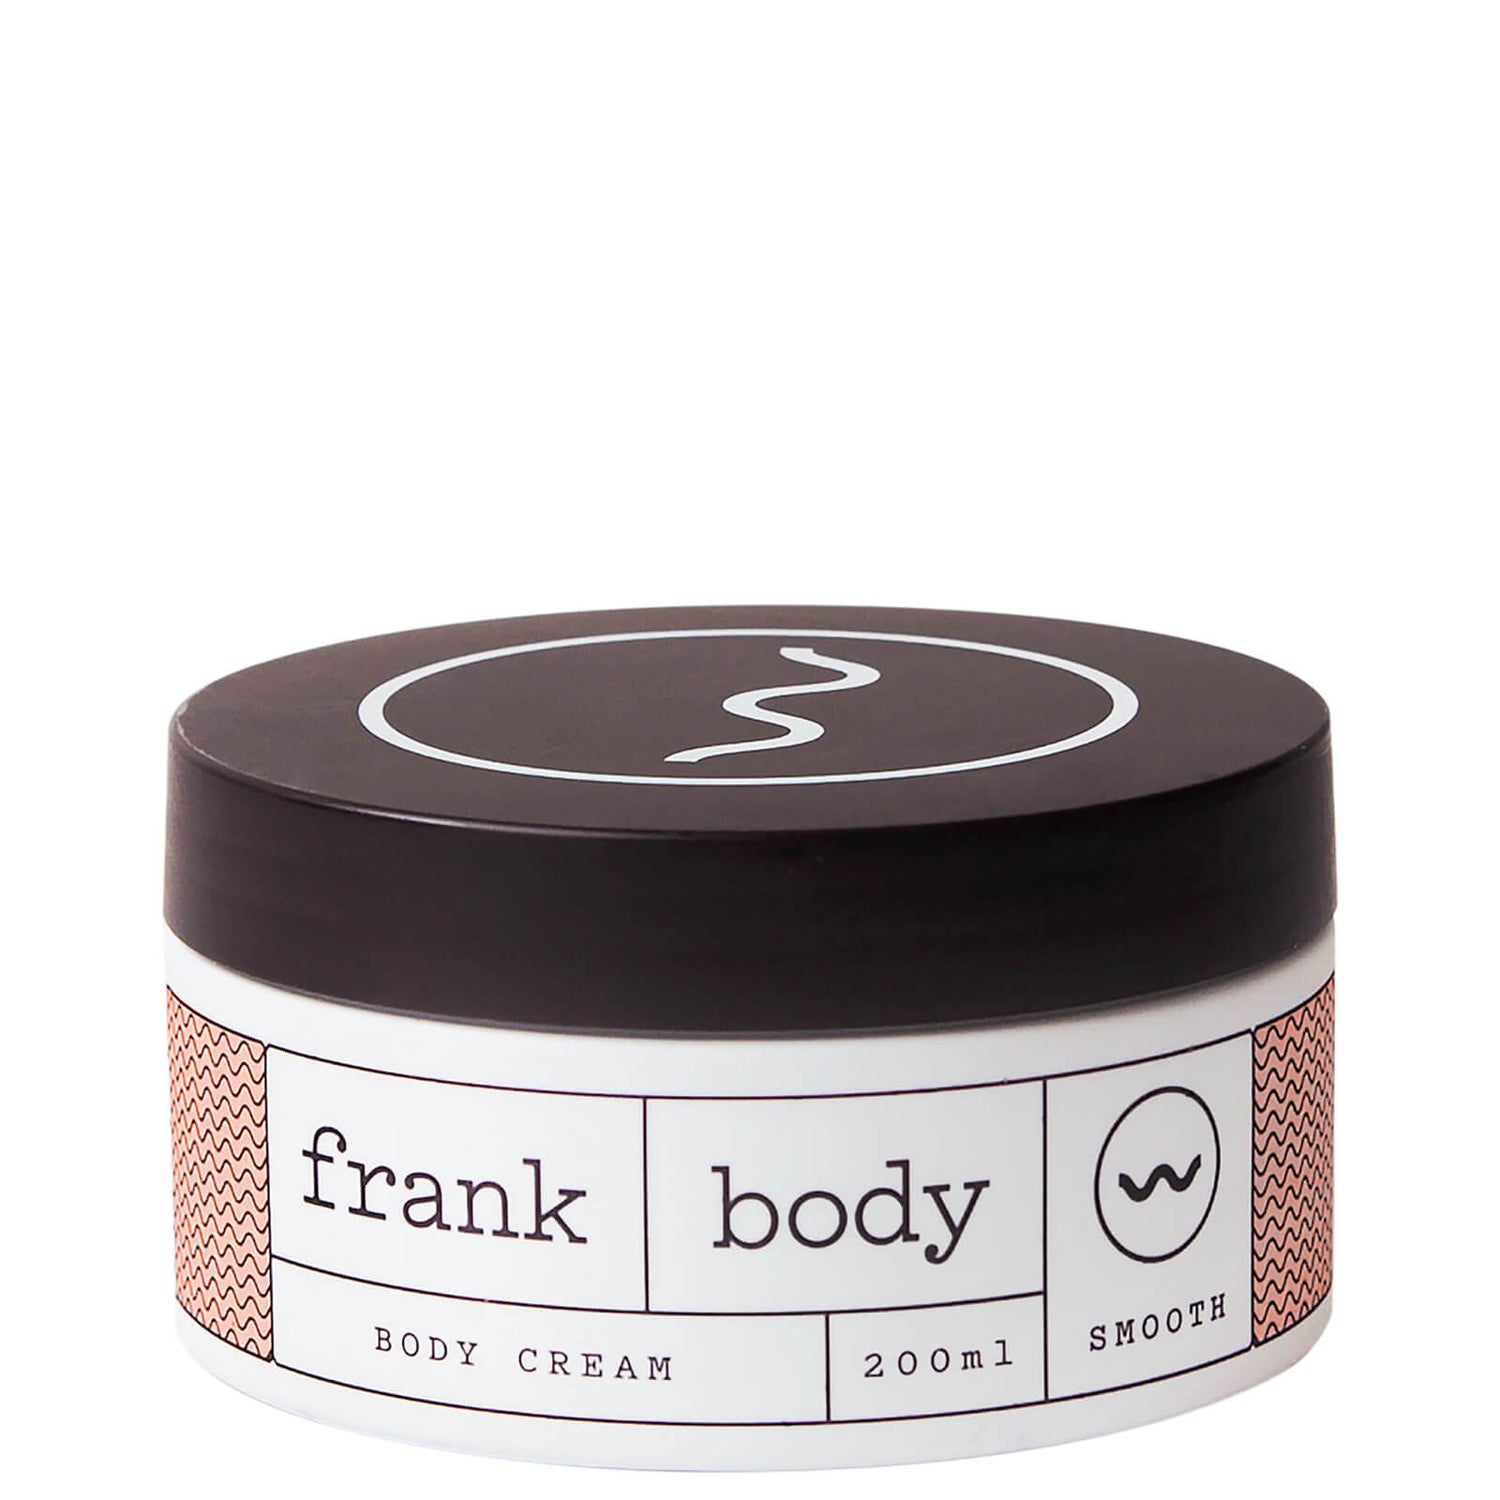 Frank Body Body Cream(프랭크 바디 바디 크림 200ml)